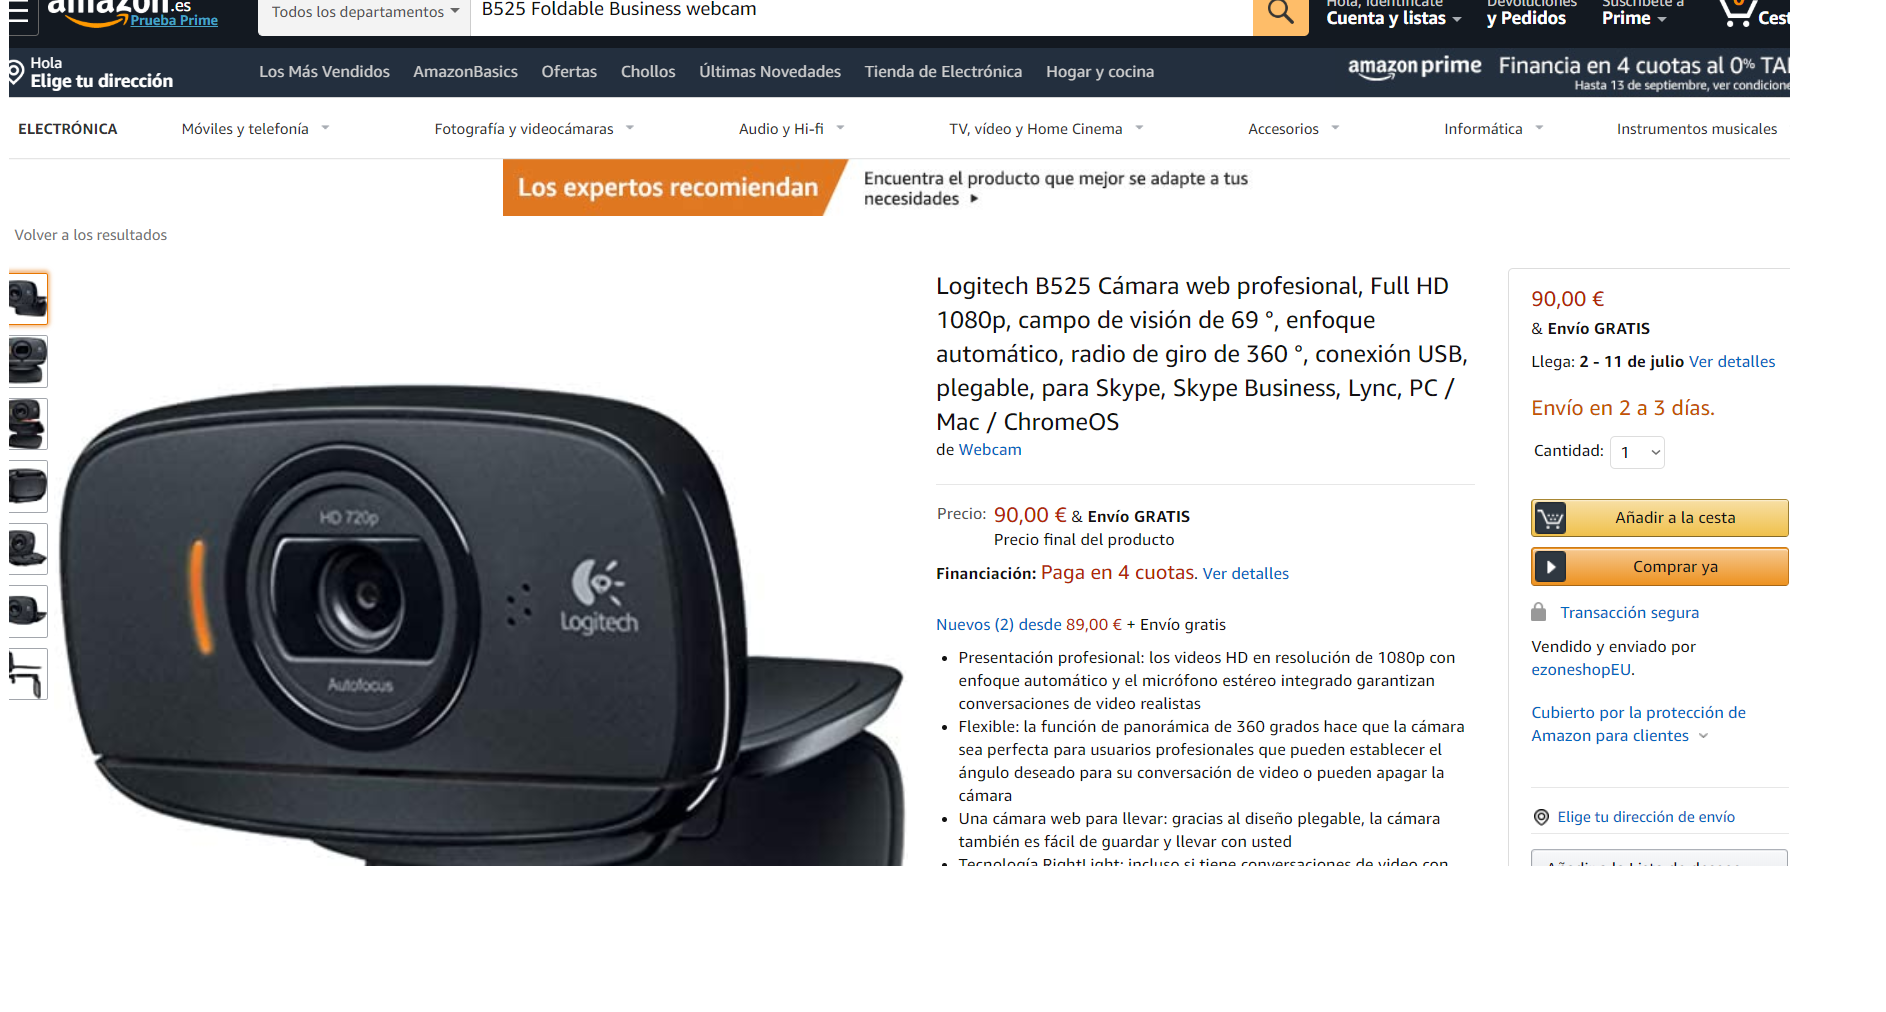 Webcam B525 Foldable Business. Fuente: Amazon